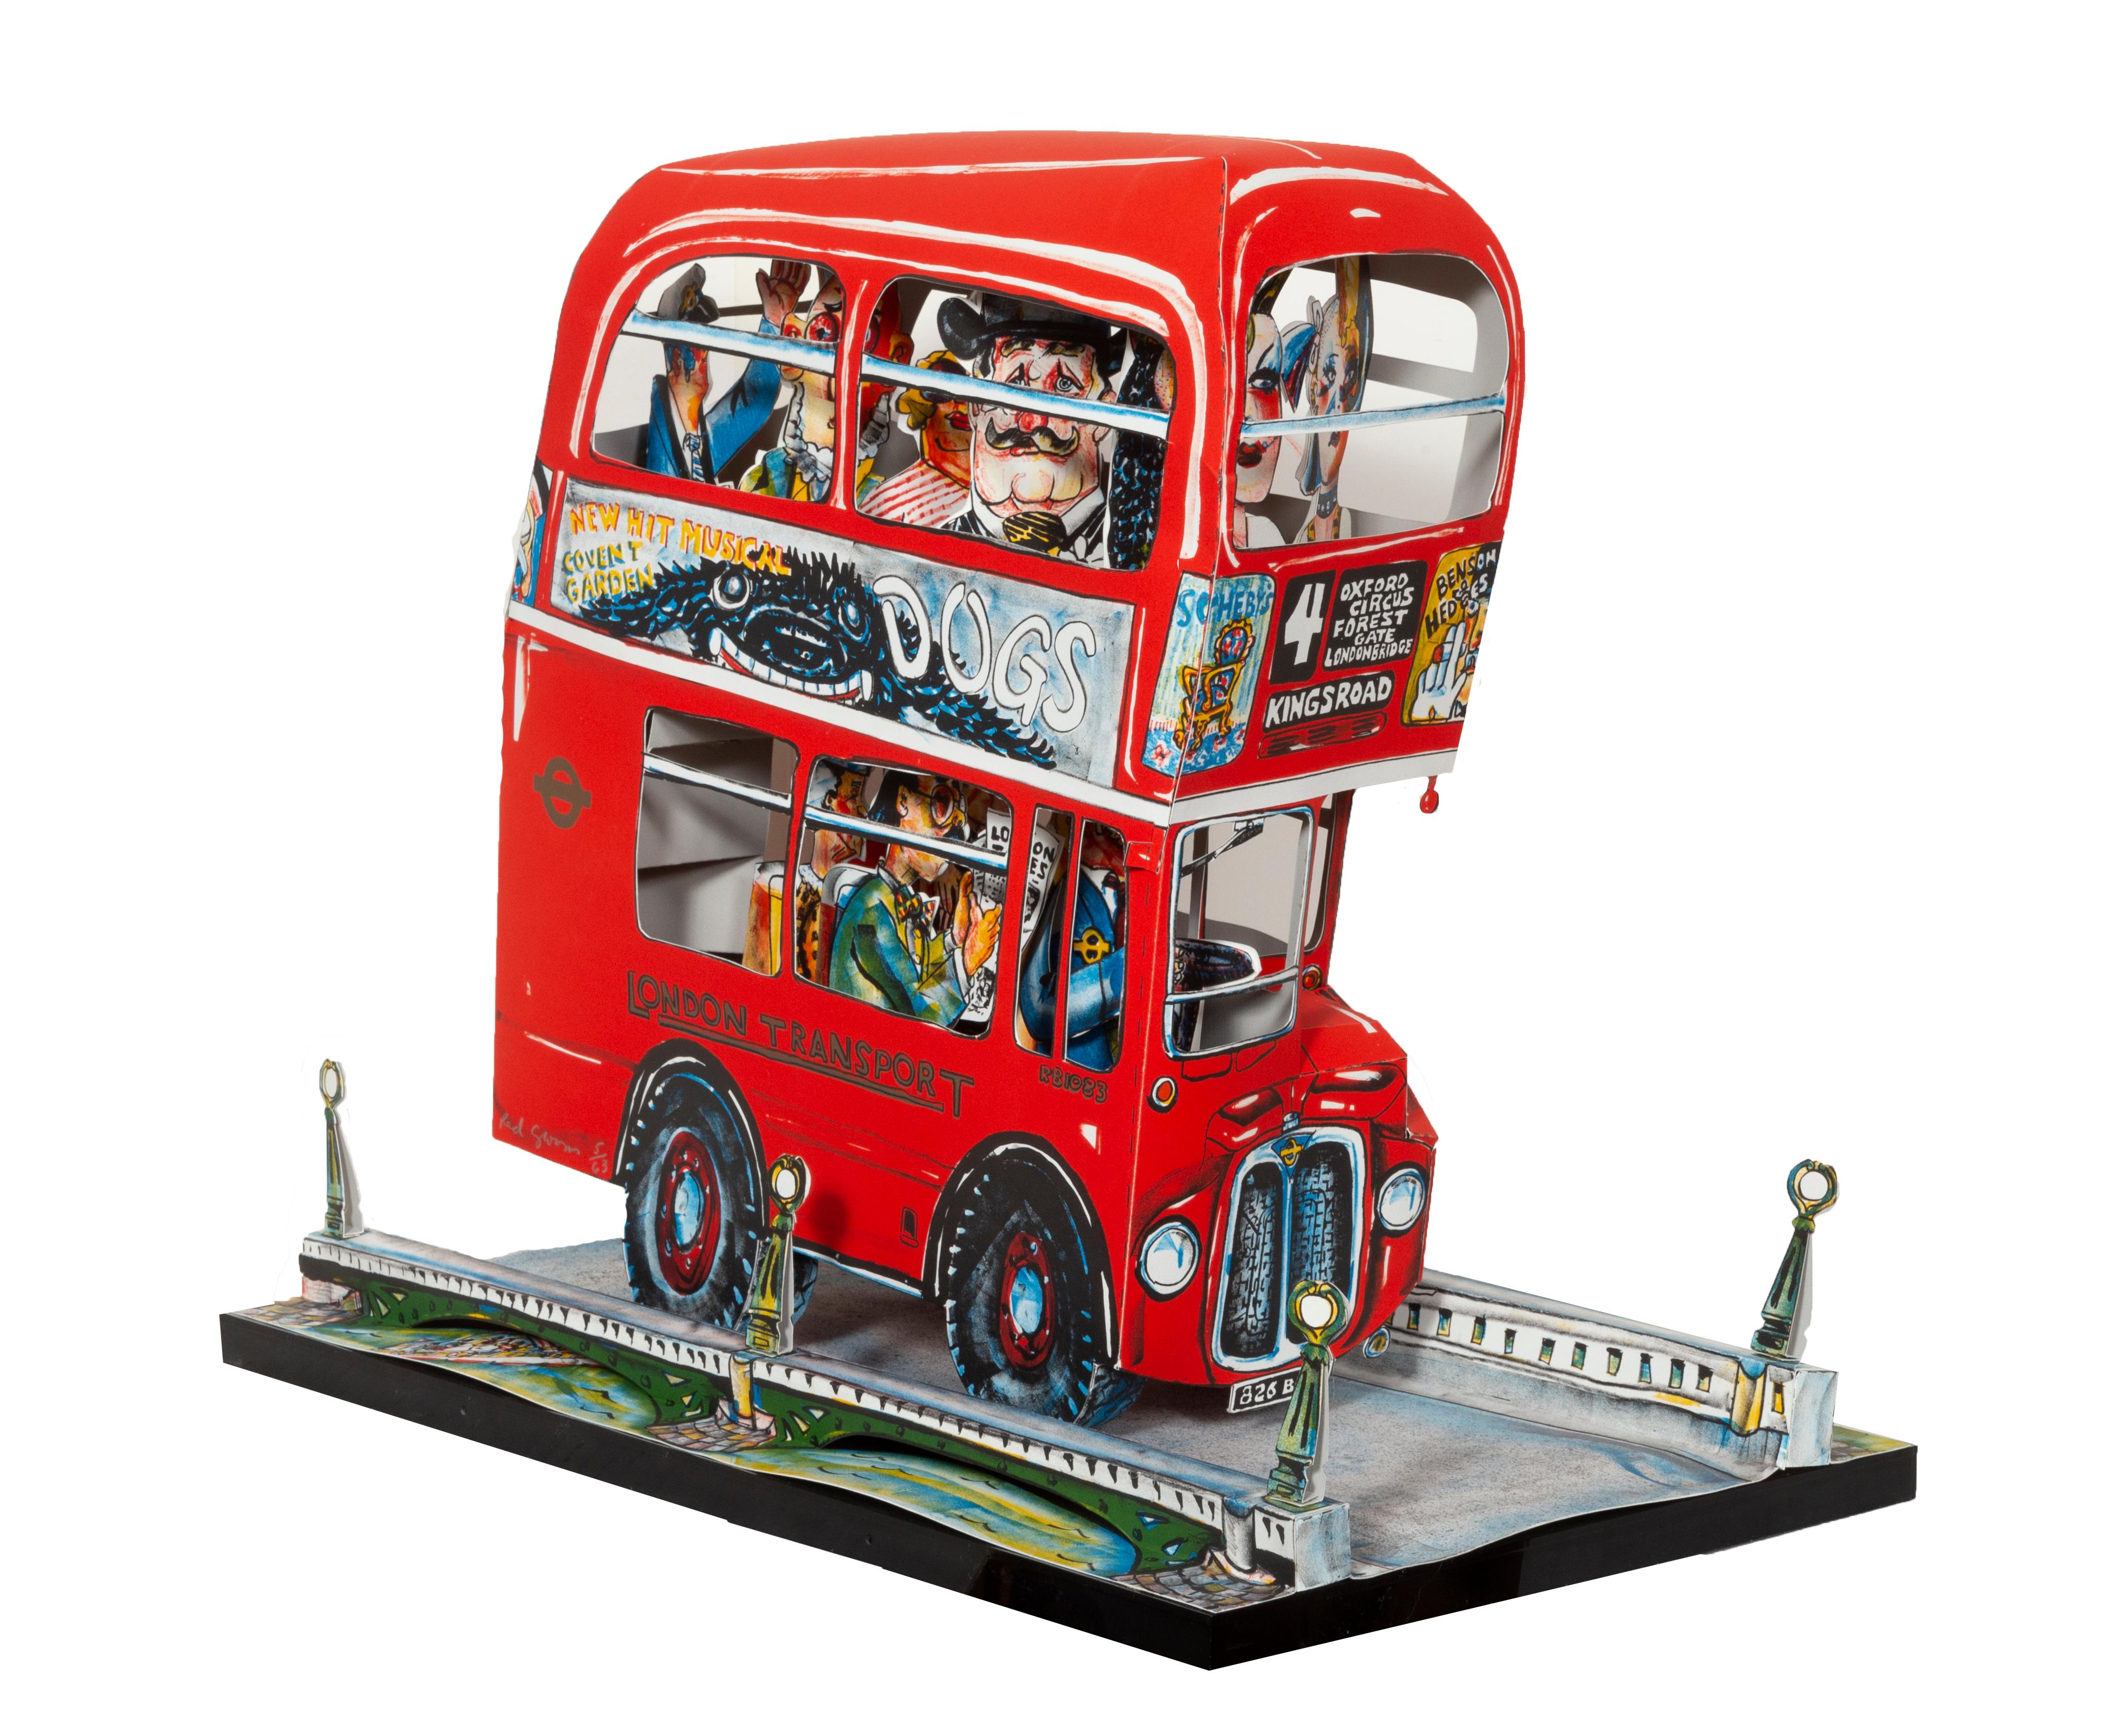 Künstler: Red Grooms, Amerikaner (1937 - )
Titel: Londoner Bus
Jahr: 1983 - 1984
Medium: 3-D Lithographie auf BFK Rives in einer Plexi-Box, signiert und nummeriert mit Bleistift
Auflage: 5/63
Größe: 19 x 21,5 x 13,5 in. (48,26 x 54,61 x 34,29